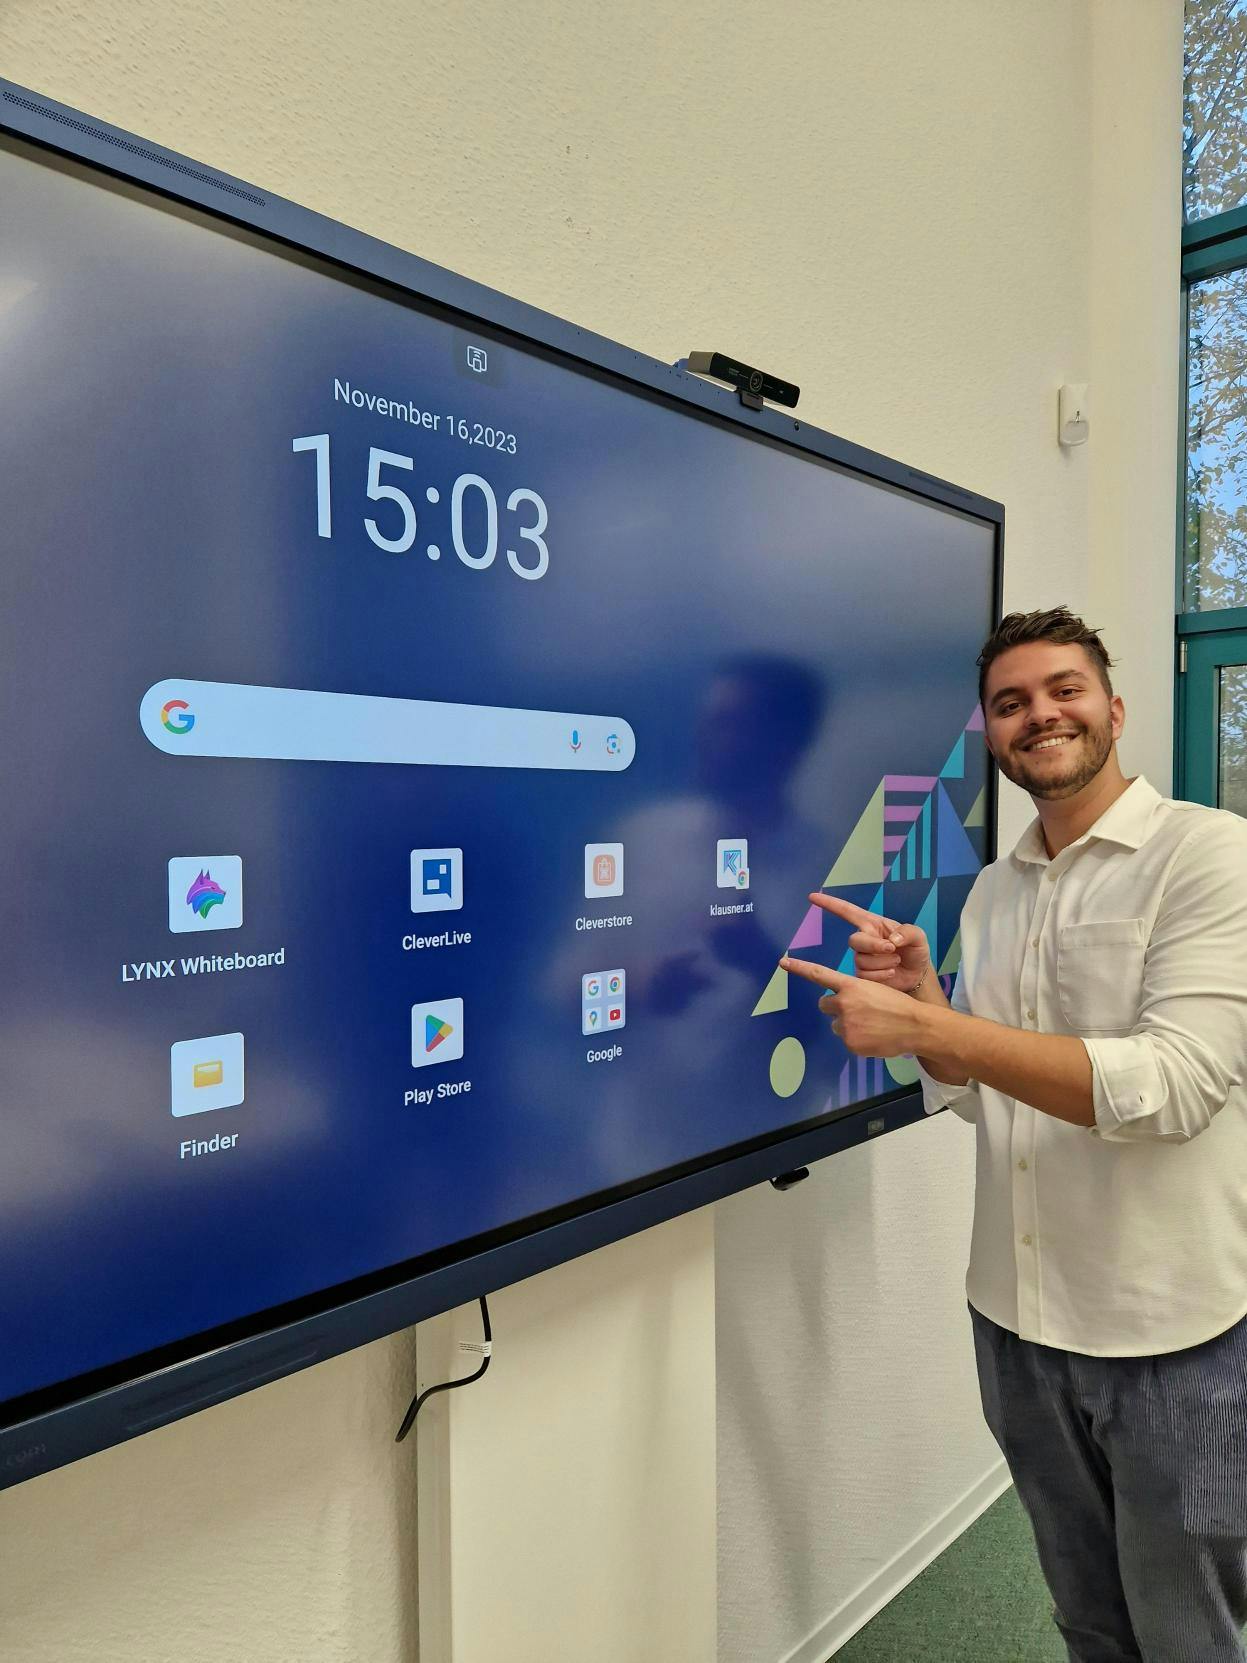 Ein Mann zeigt auf die Benutzeroberfläche eines interaktiven Clevertouch-Displays mit verschiedenen Anwendungsicons und einer Zeit- und Datumsanzeige.